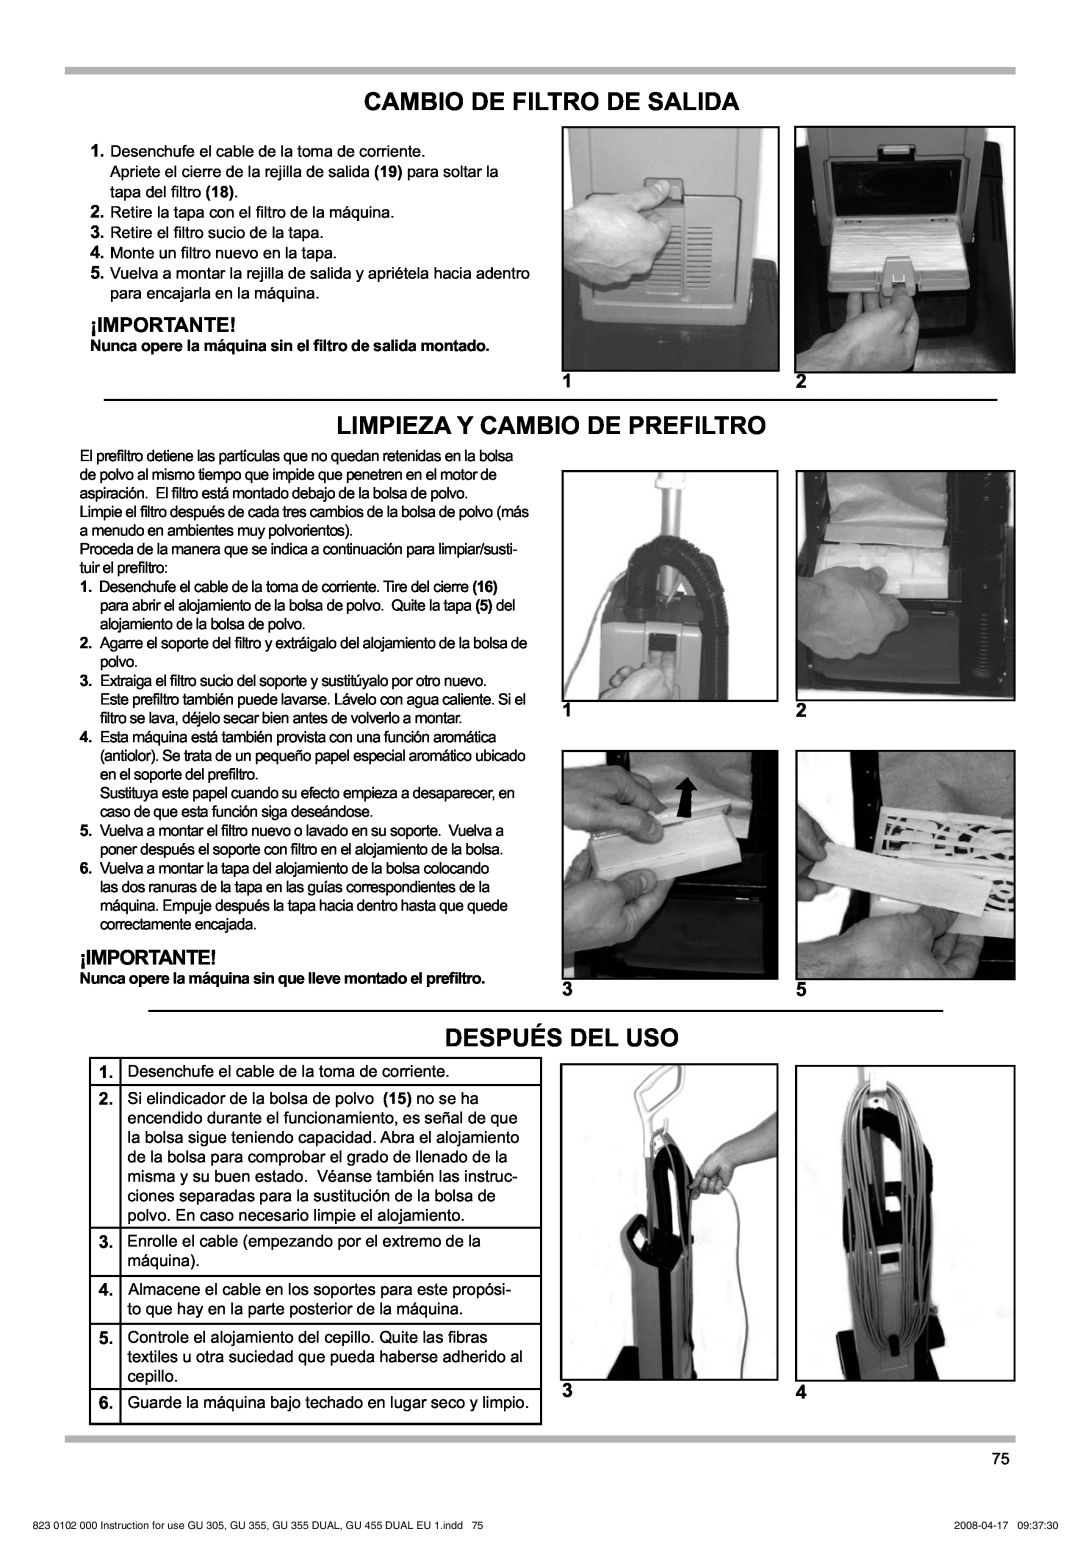 Nilfisk-Advance America GU 18 DMU Cambio De Filtro De Salida, Limpieza Y Cambio De Prefiltro, Después Del Uso, ¡Importante 